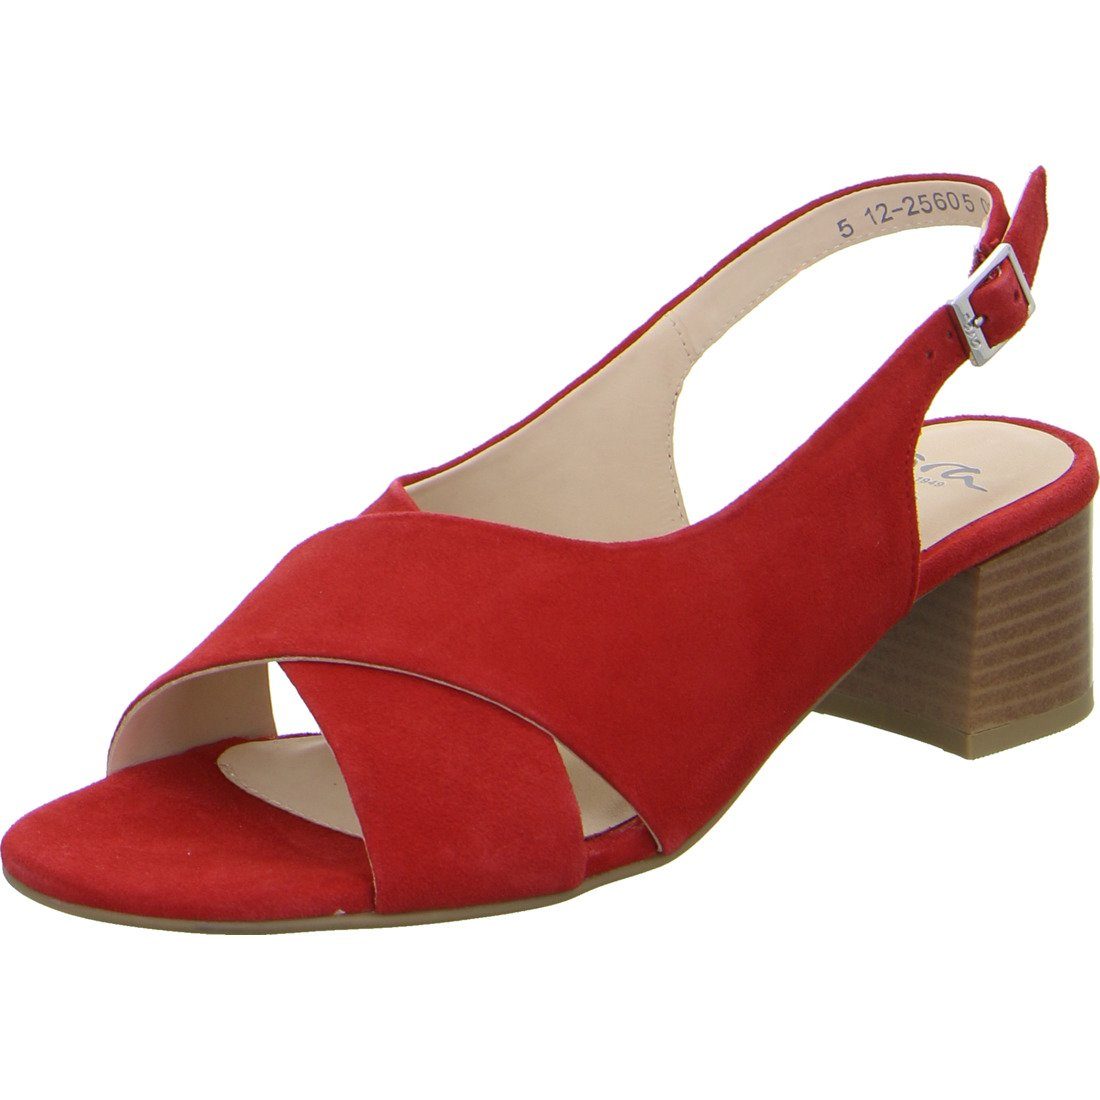 Ara Ara Schuhe, Sandalette Prato - Rauleder Damen Sandalette rot 047991